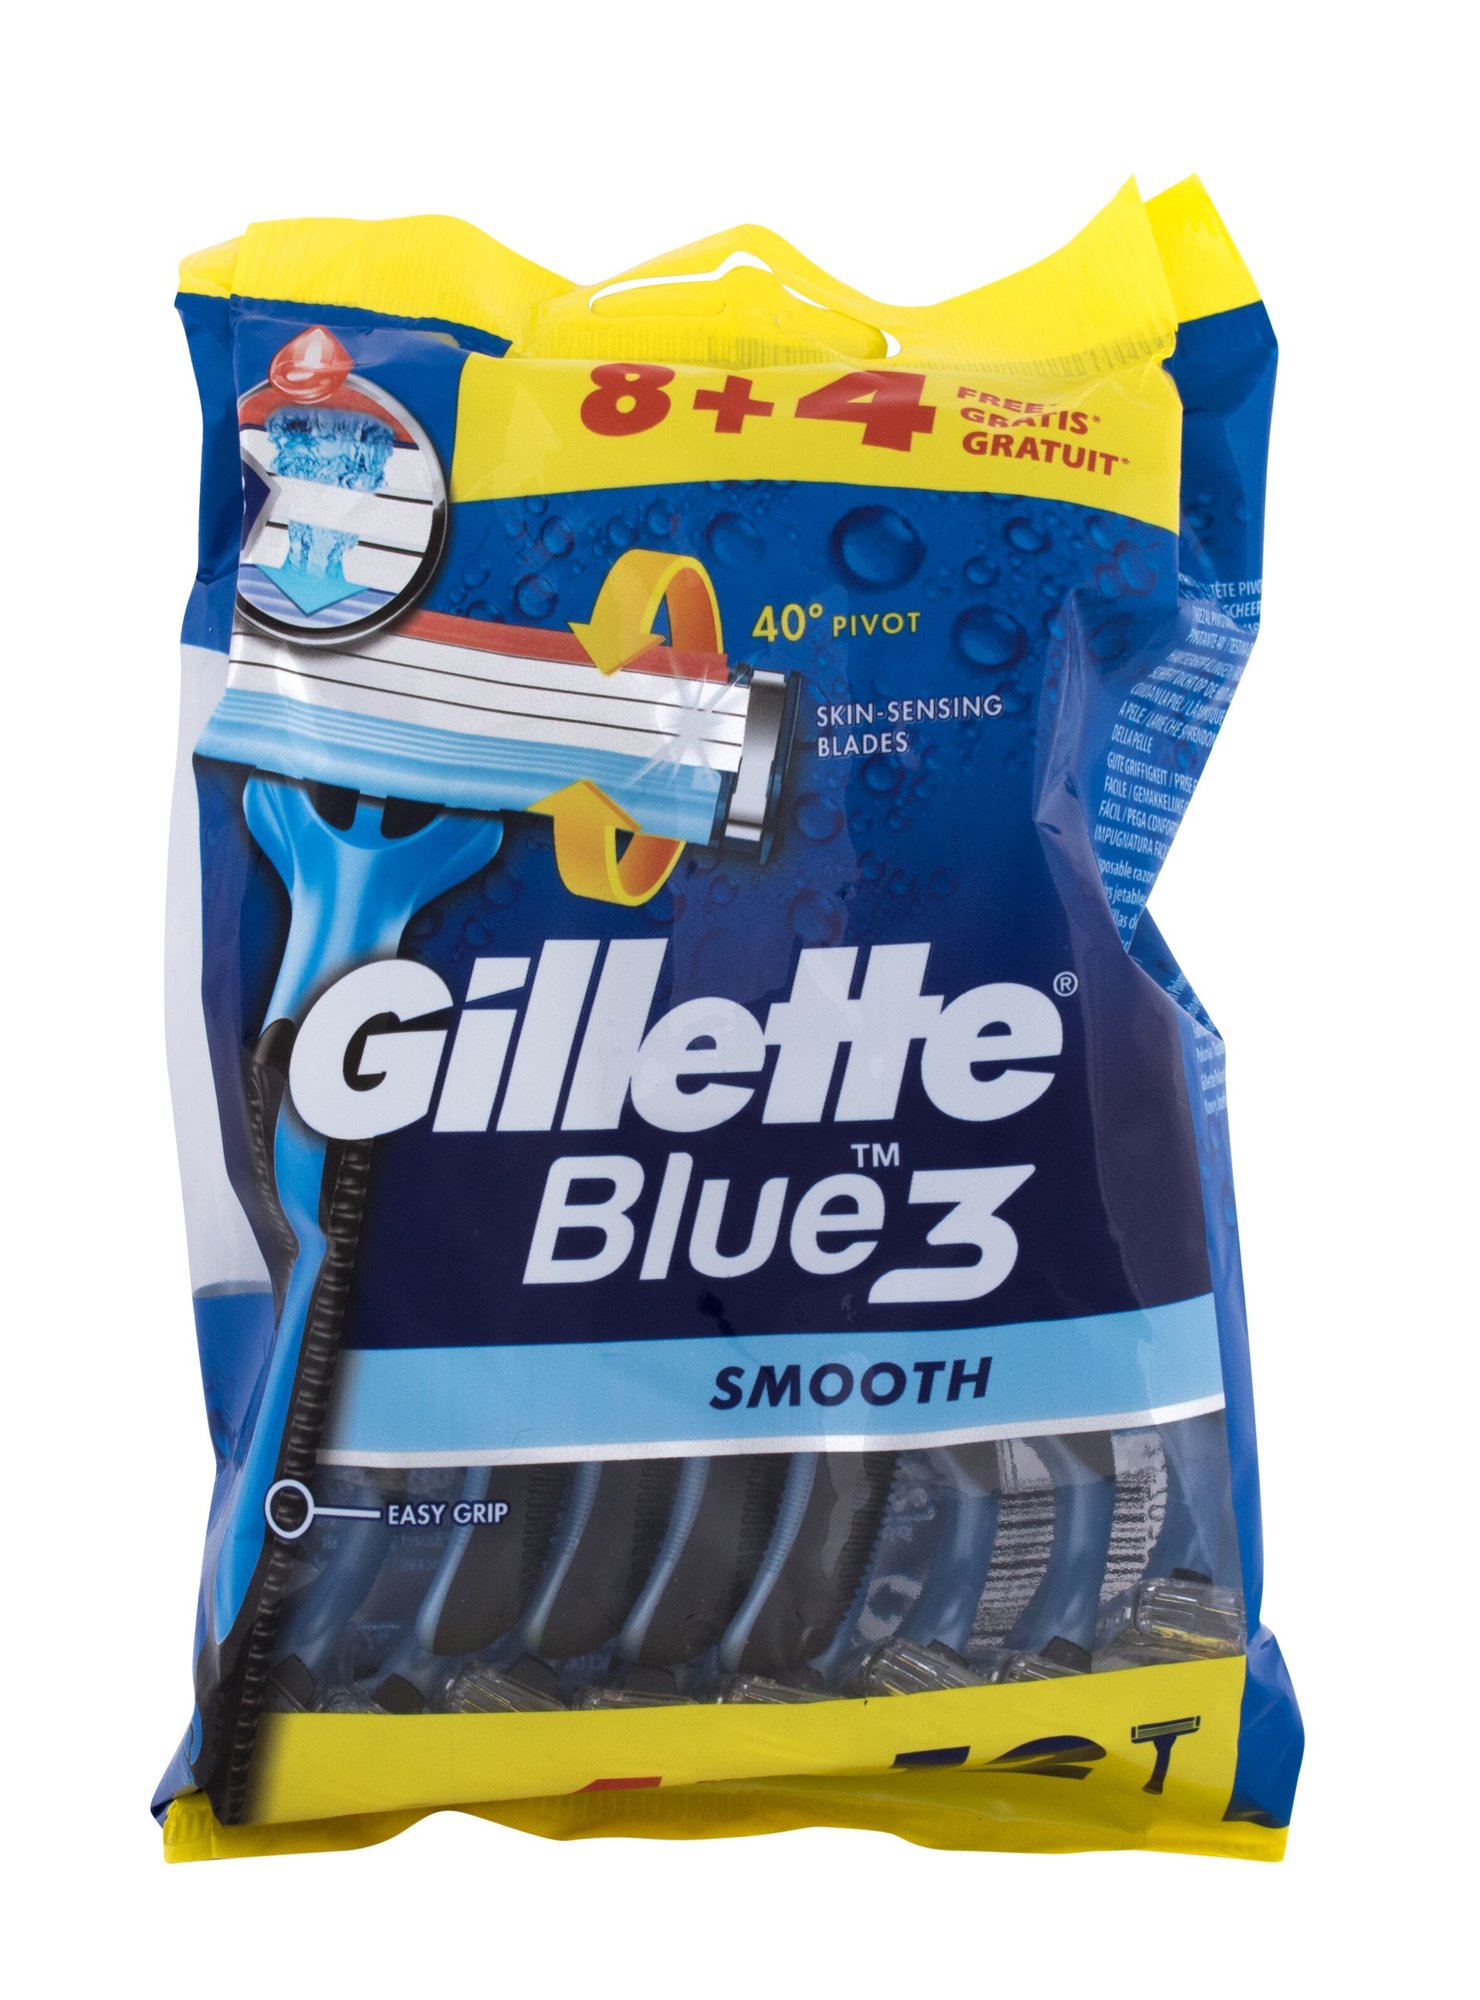 Gillette Blue3 Smooth skustuvas